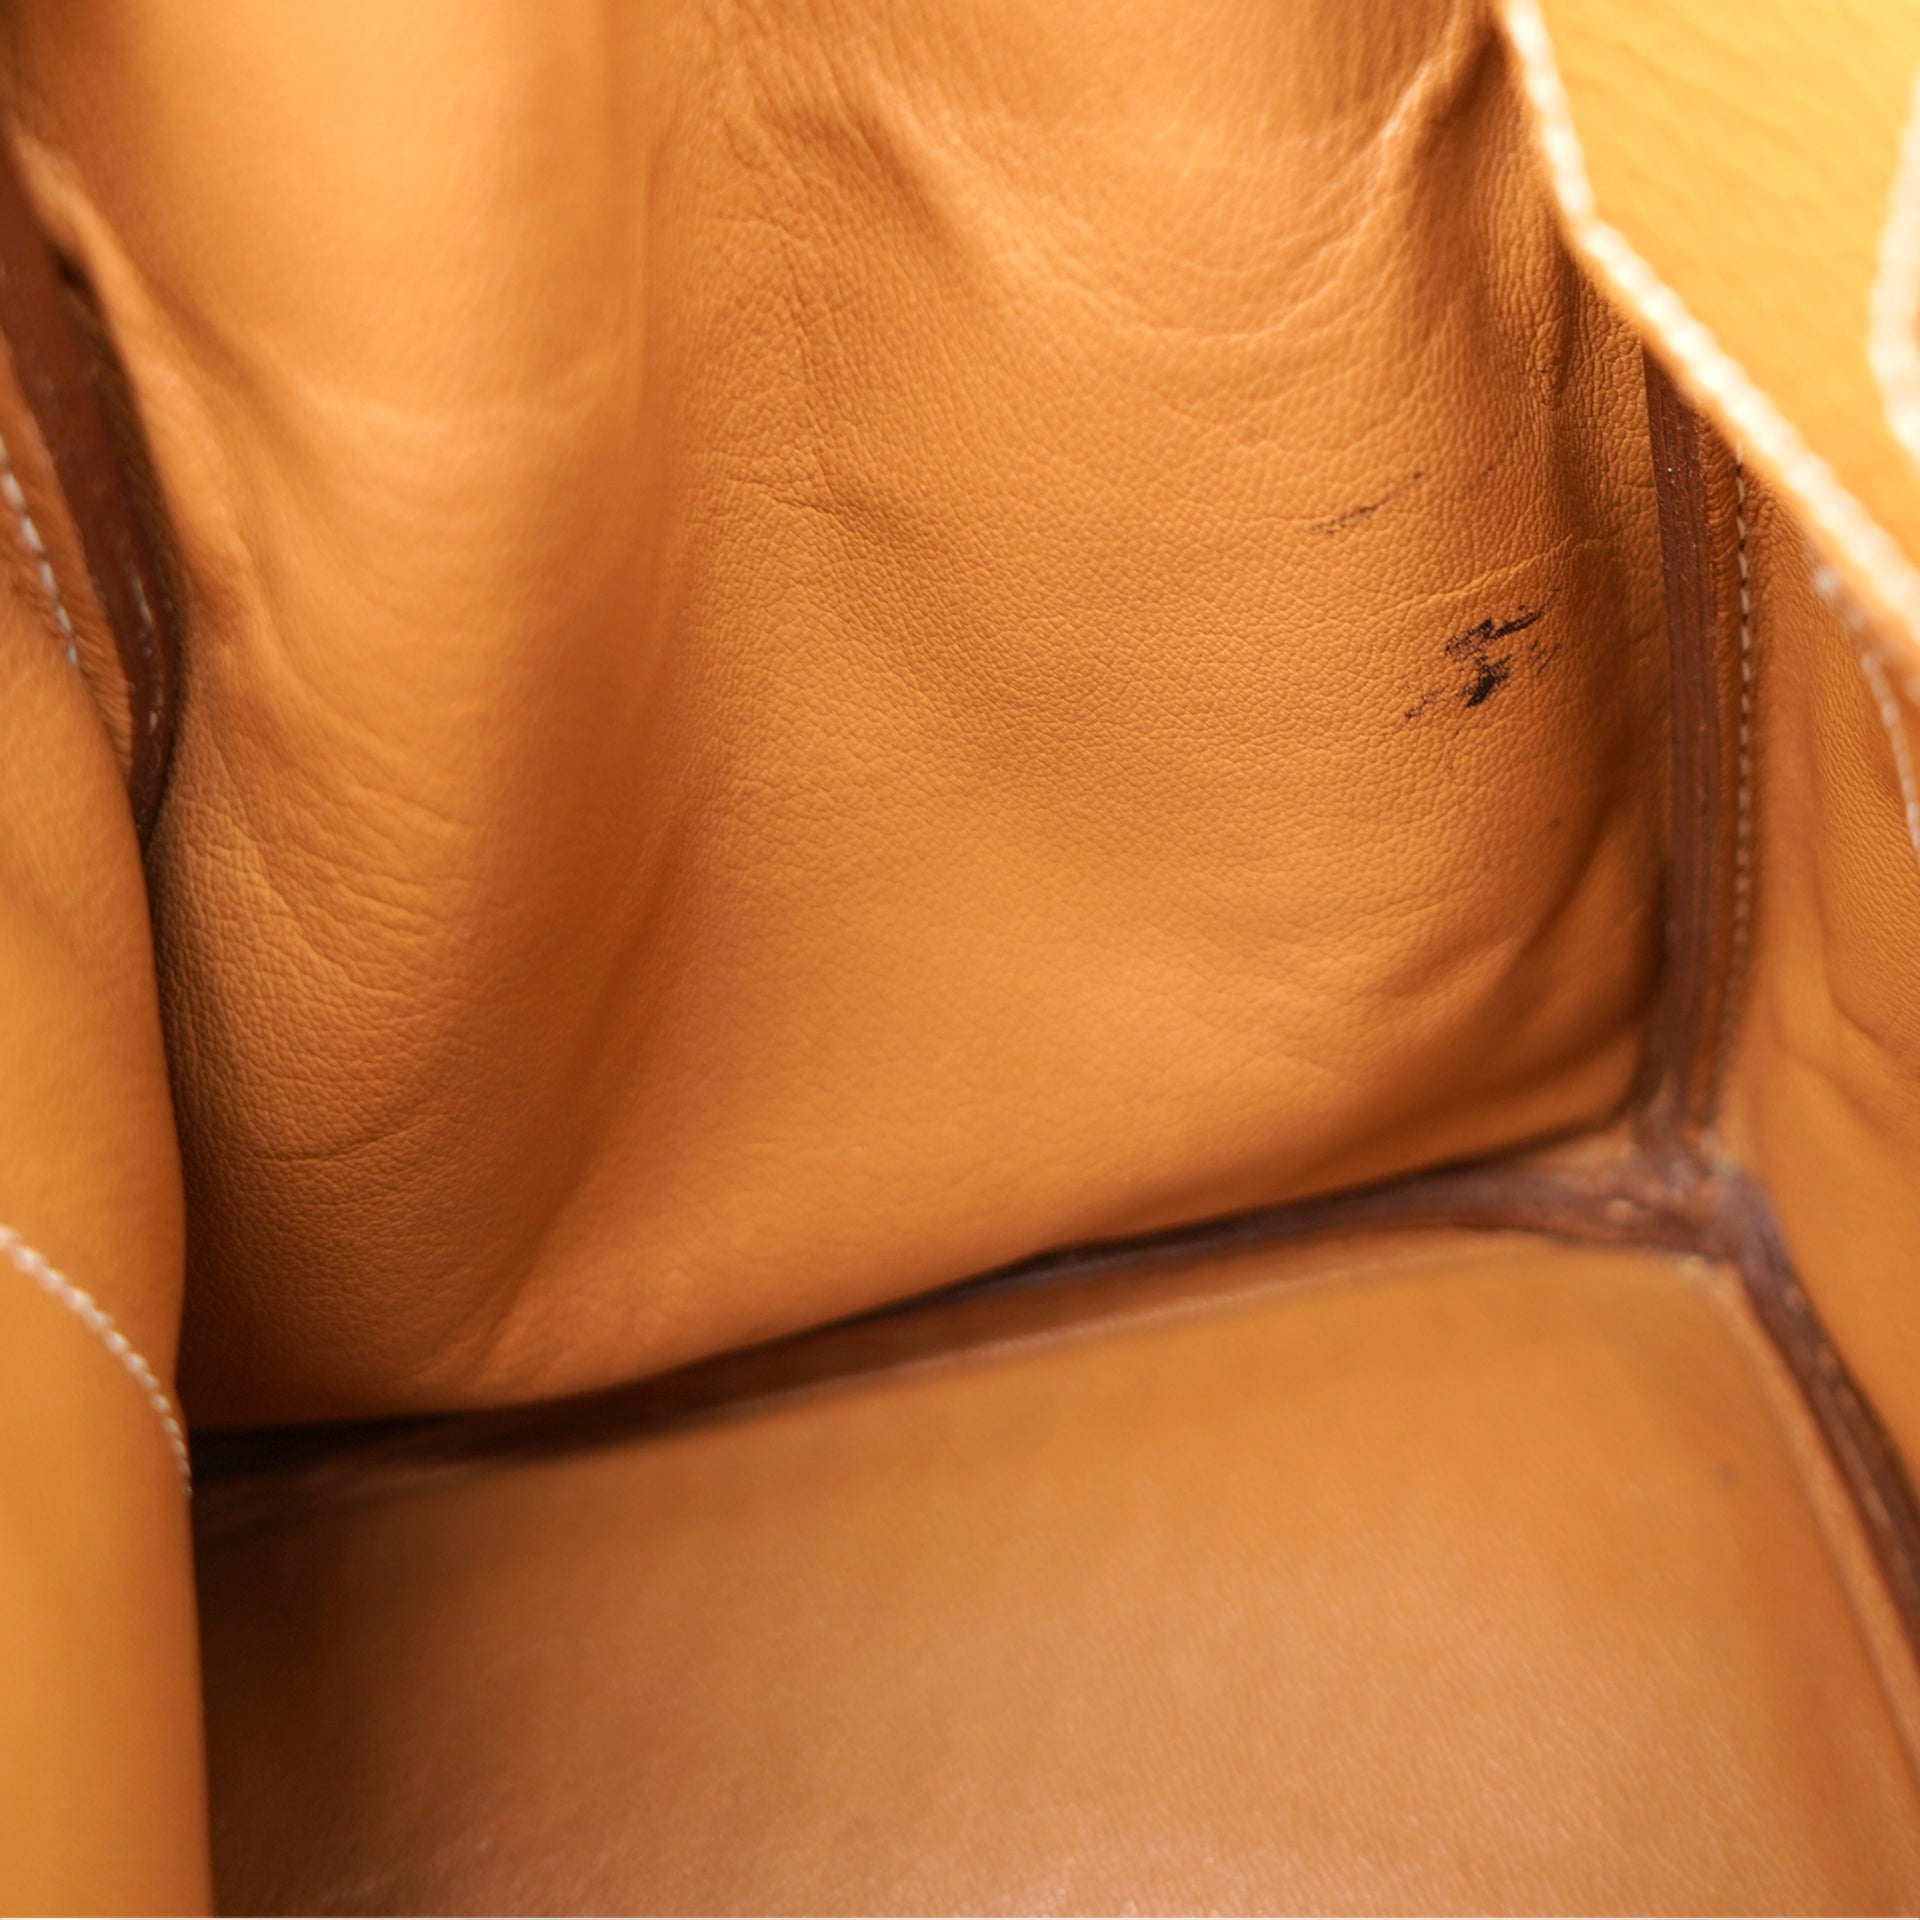 Hermes Togo Leather Birkin 35 Bag Natural Sable – STYLISHTOP